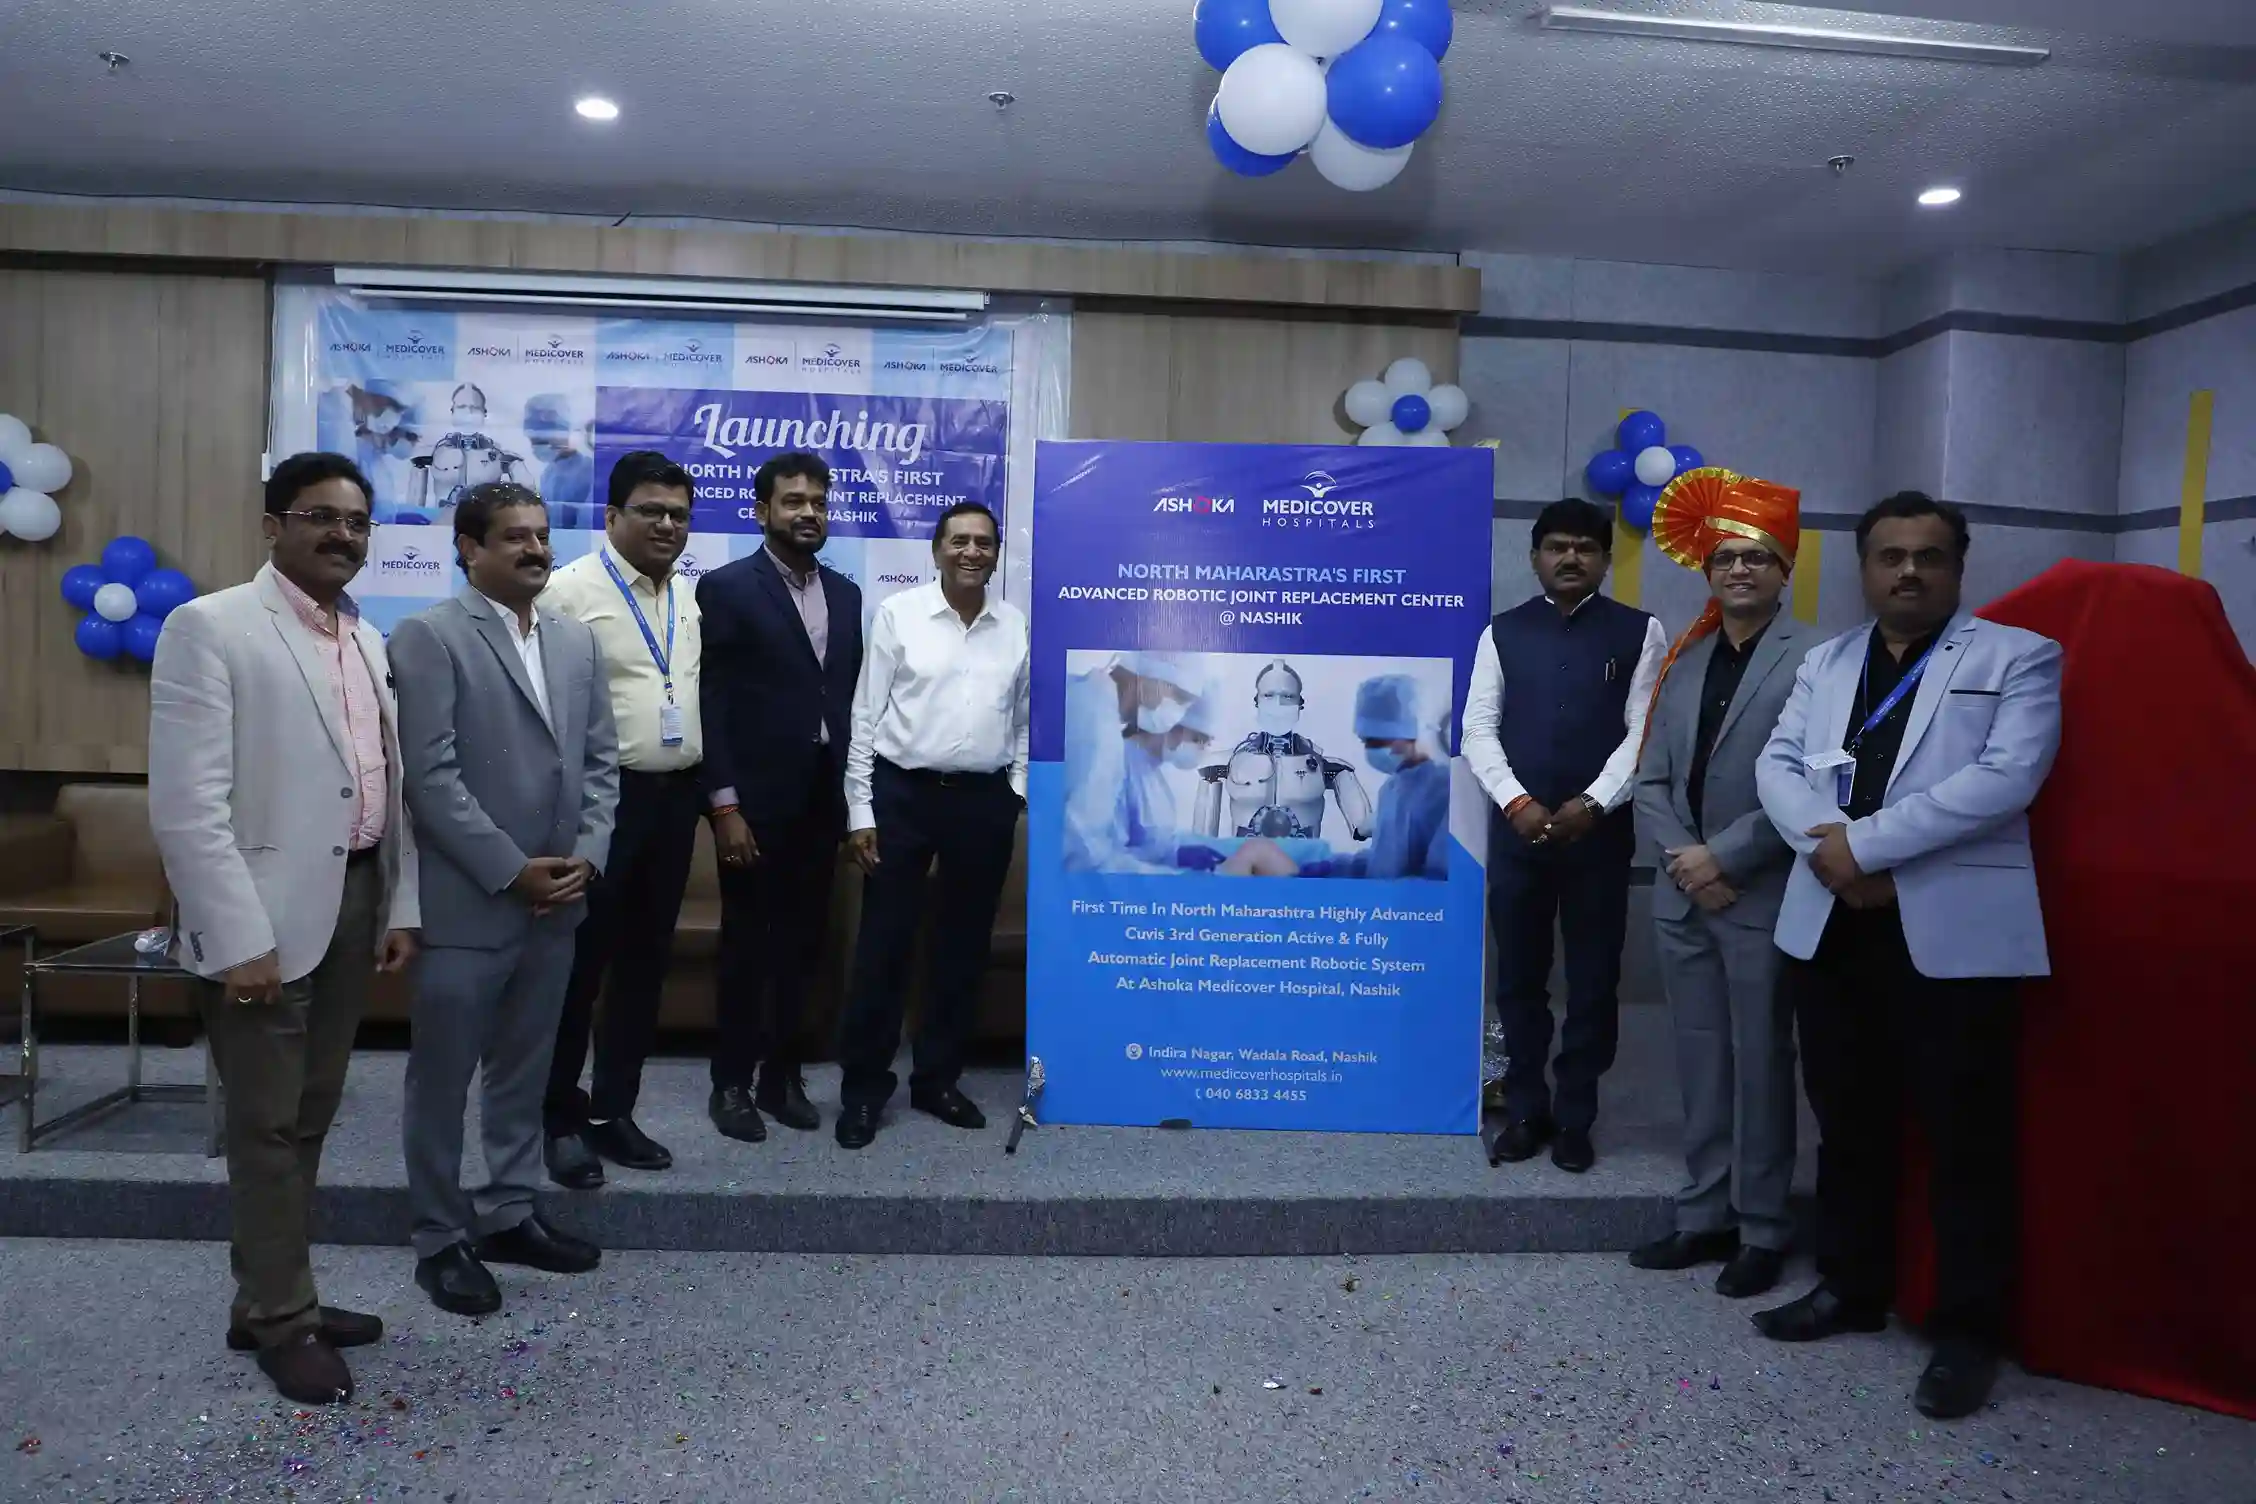 अशोका मेडिकोव्हर हॉस्पिटल्स, नाशिकने उत्तर महाराष्ट्रात प्रथमच अत्यंत प्रगत CUVIS 3री जनरेशन अॅक्टिव्ह आणि पूर्णपणे स्वयंचलित जॉइंट रिप्लेसमेंट रोबोटिक सिस्टीम लाँच केली आहे.